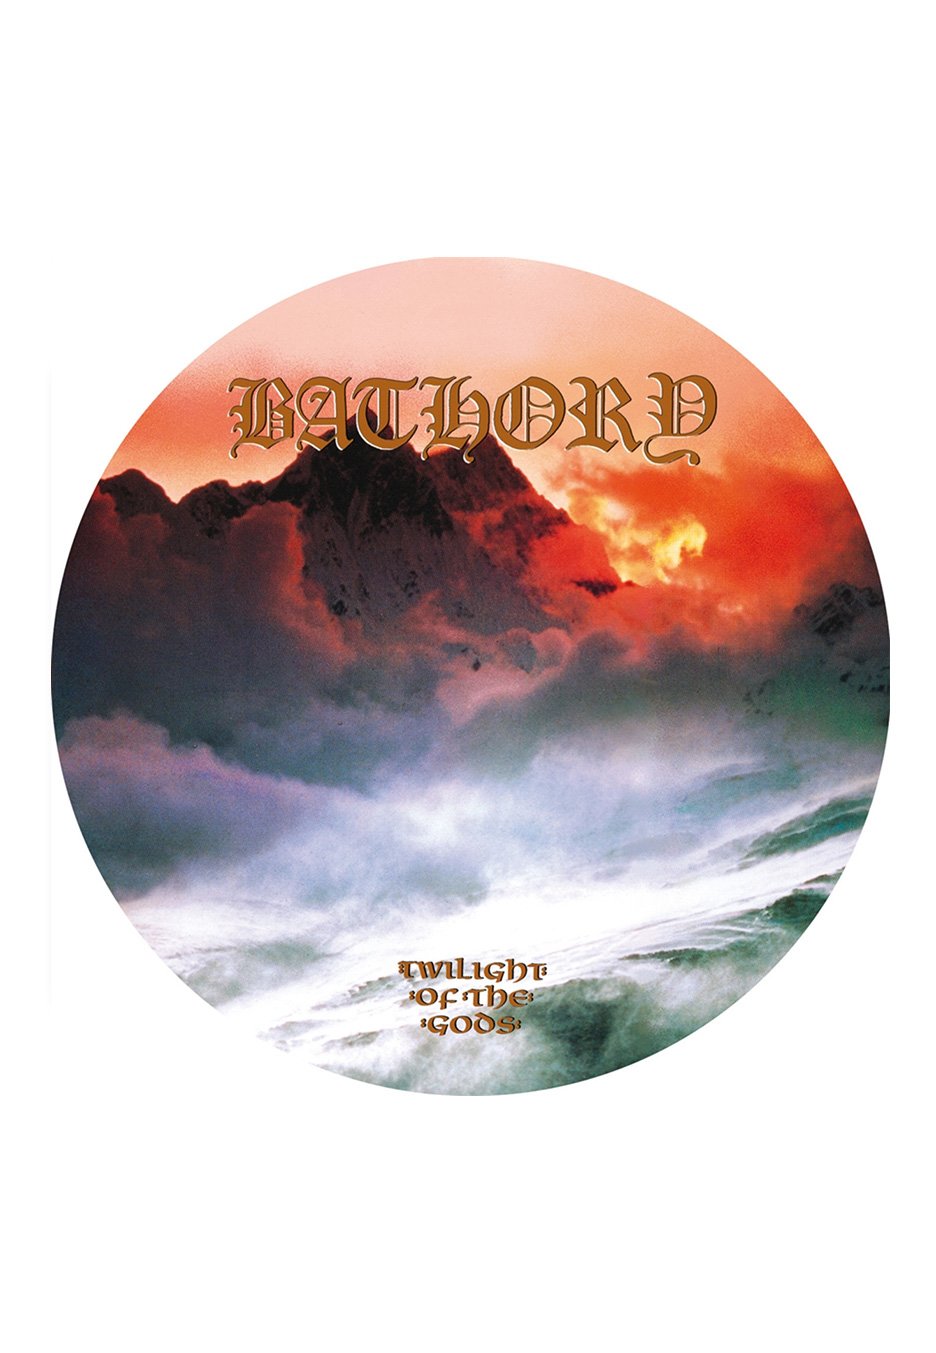 Bathory - Twilight Of The Gods - Picture Vinyl